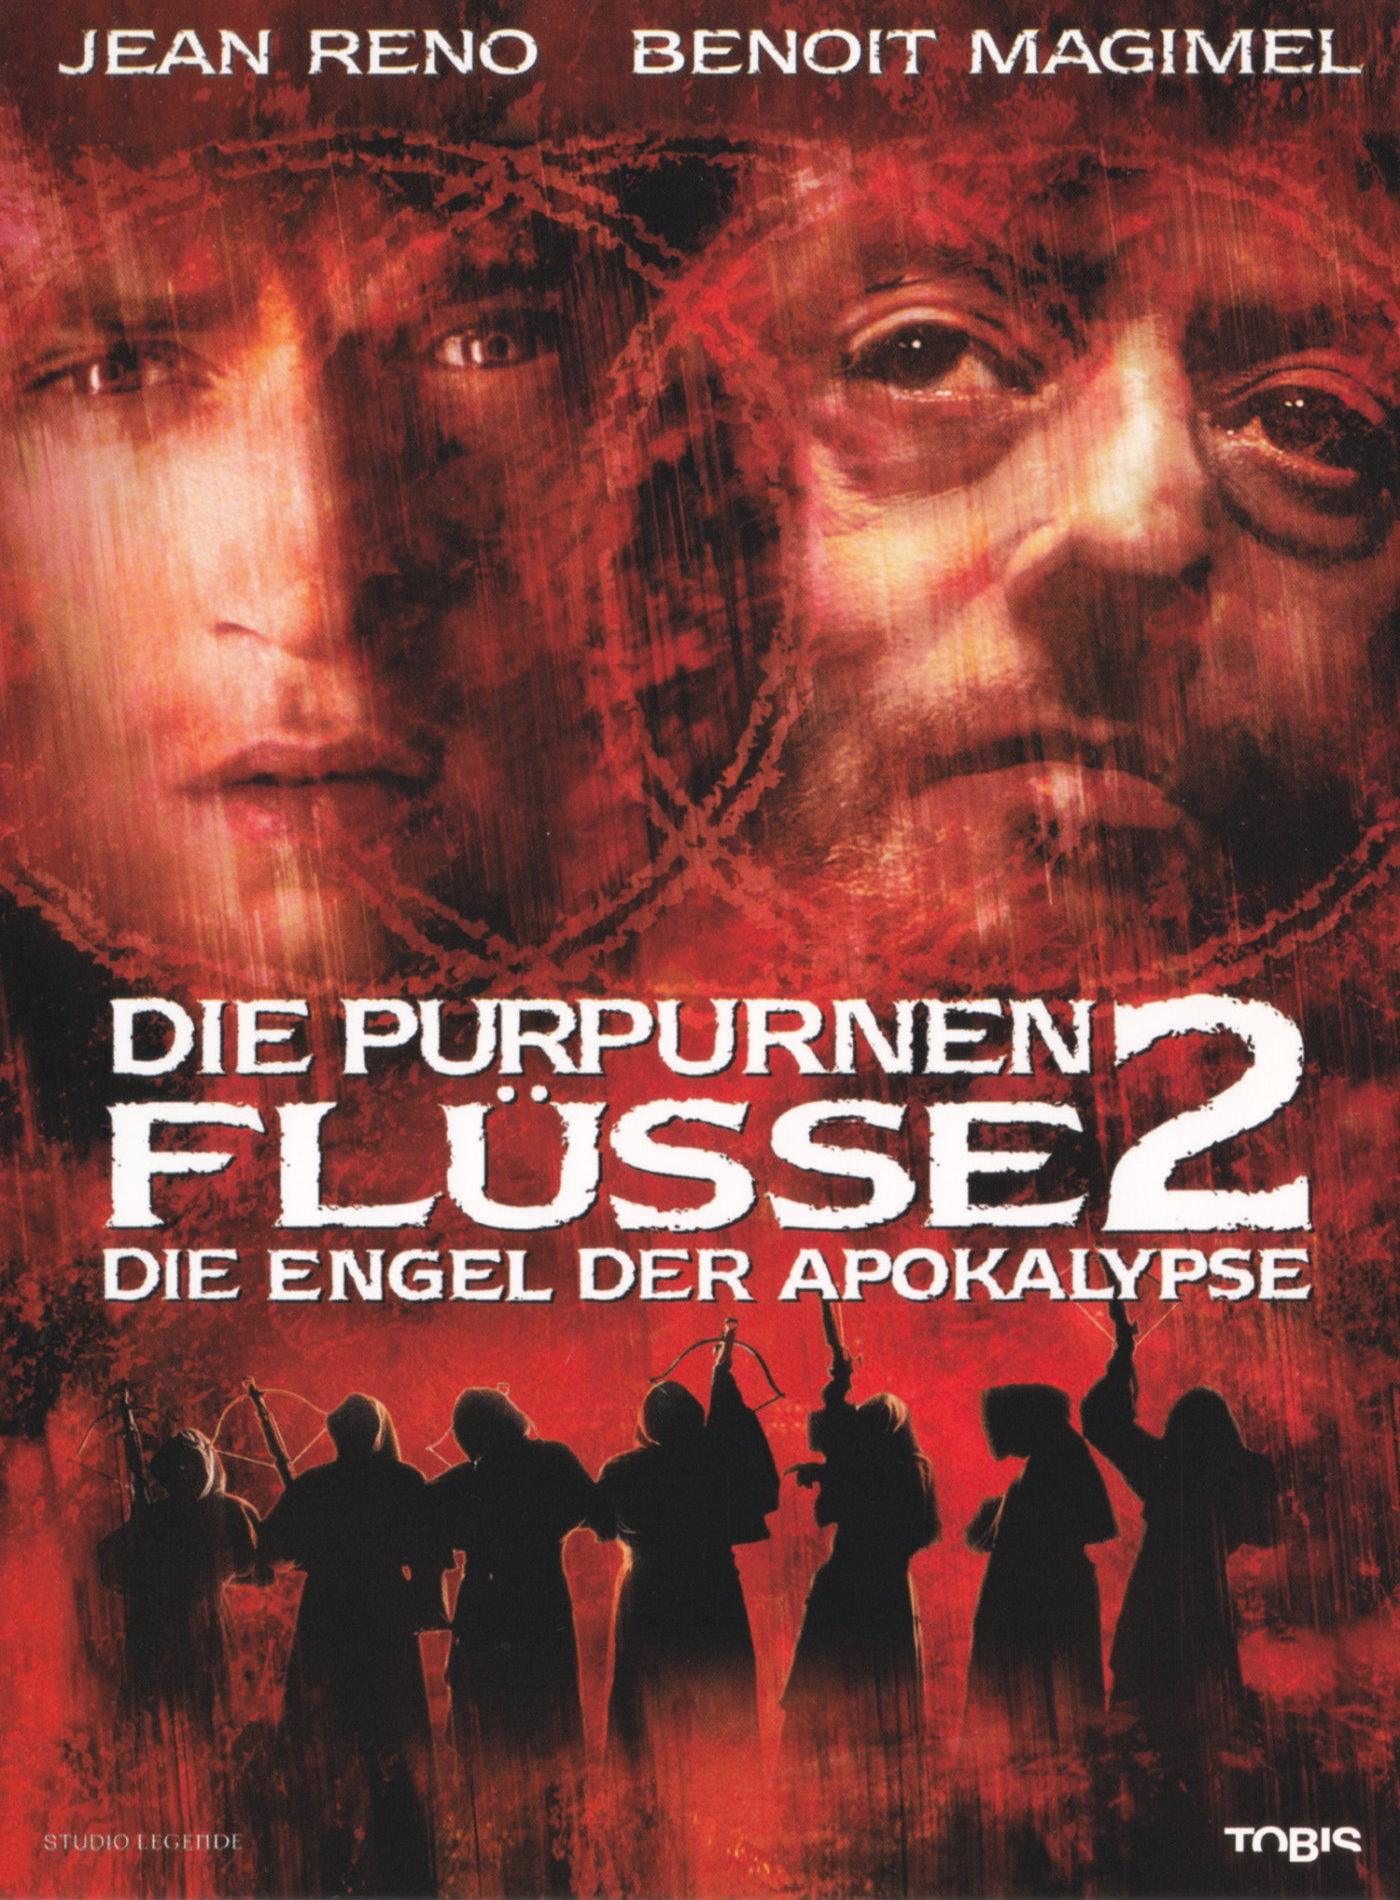 Cover - Die purpurnen Flüsse 2 - Die Engel der Apokalypse.jpg